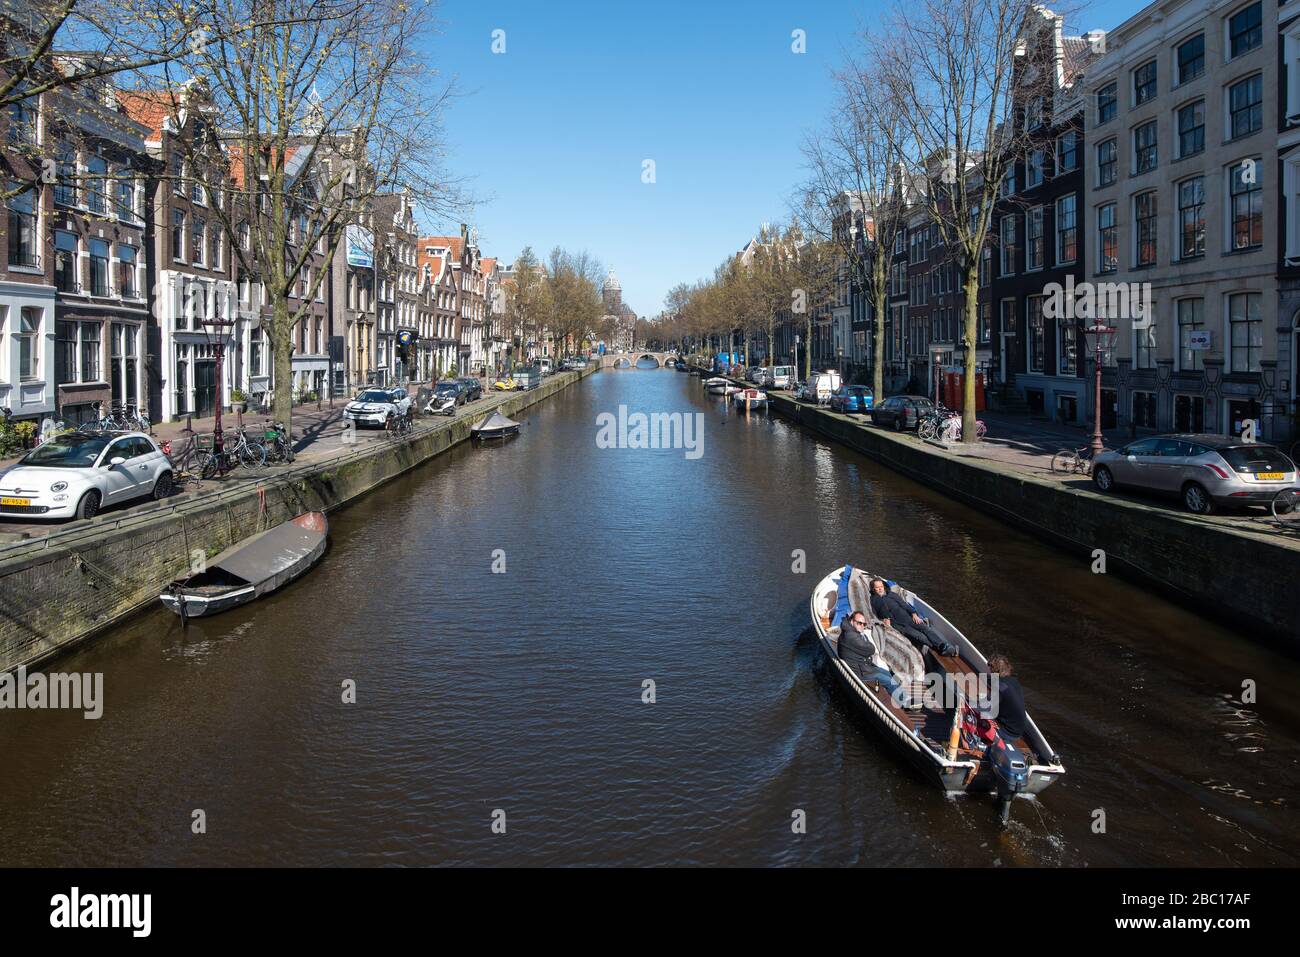 HE Pays-Bas. Amsterdam. En raison du virus Corona, la ville est pratiquement vide. Banque D'Images